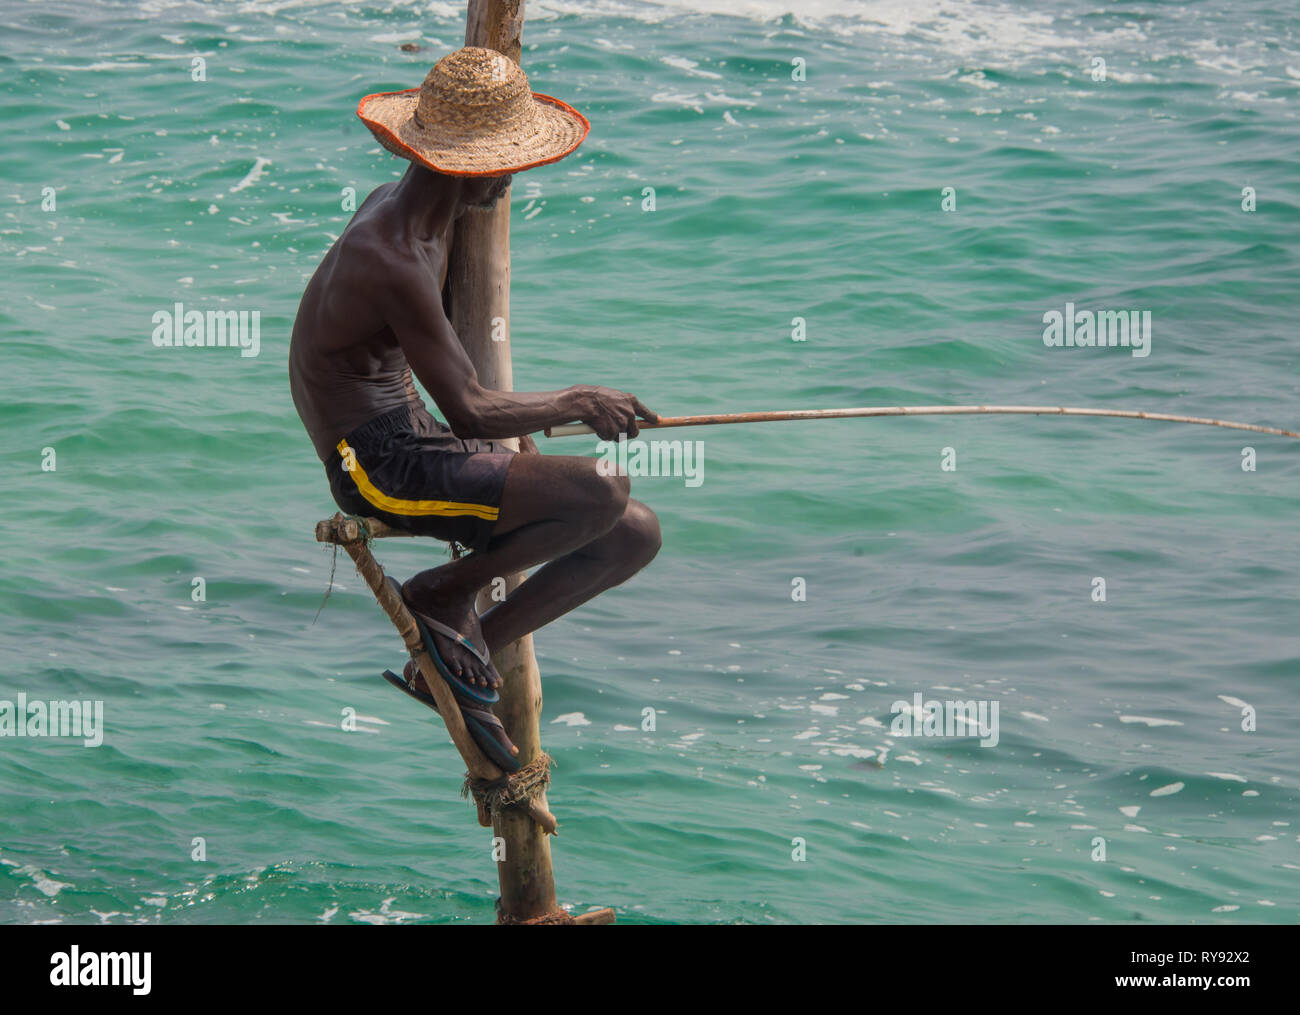 L'Asie, Sri Lanka, Koggala, pêche sur échasses Banque D'Images